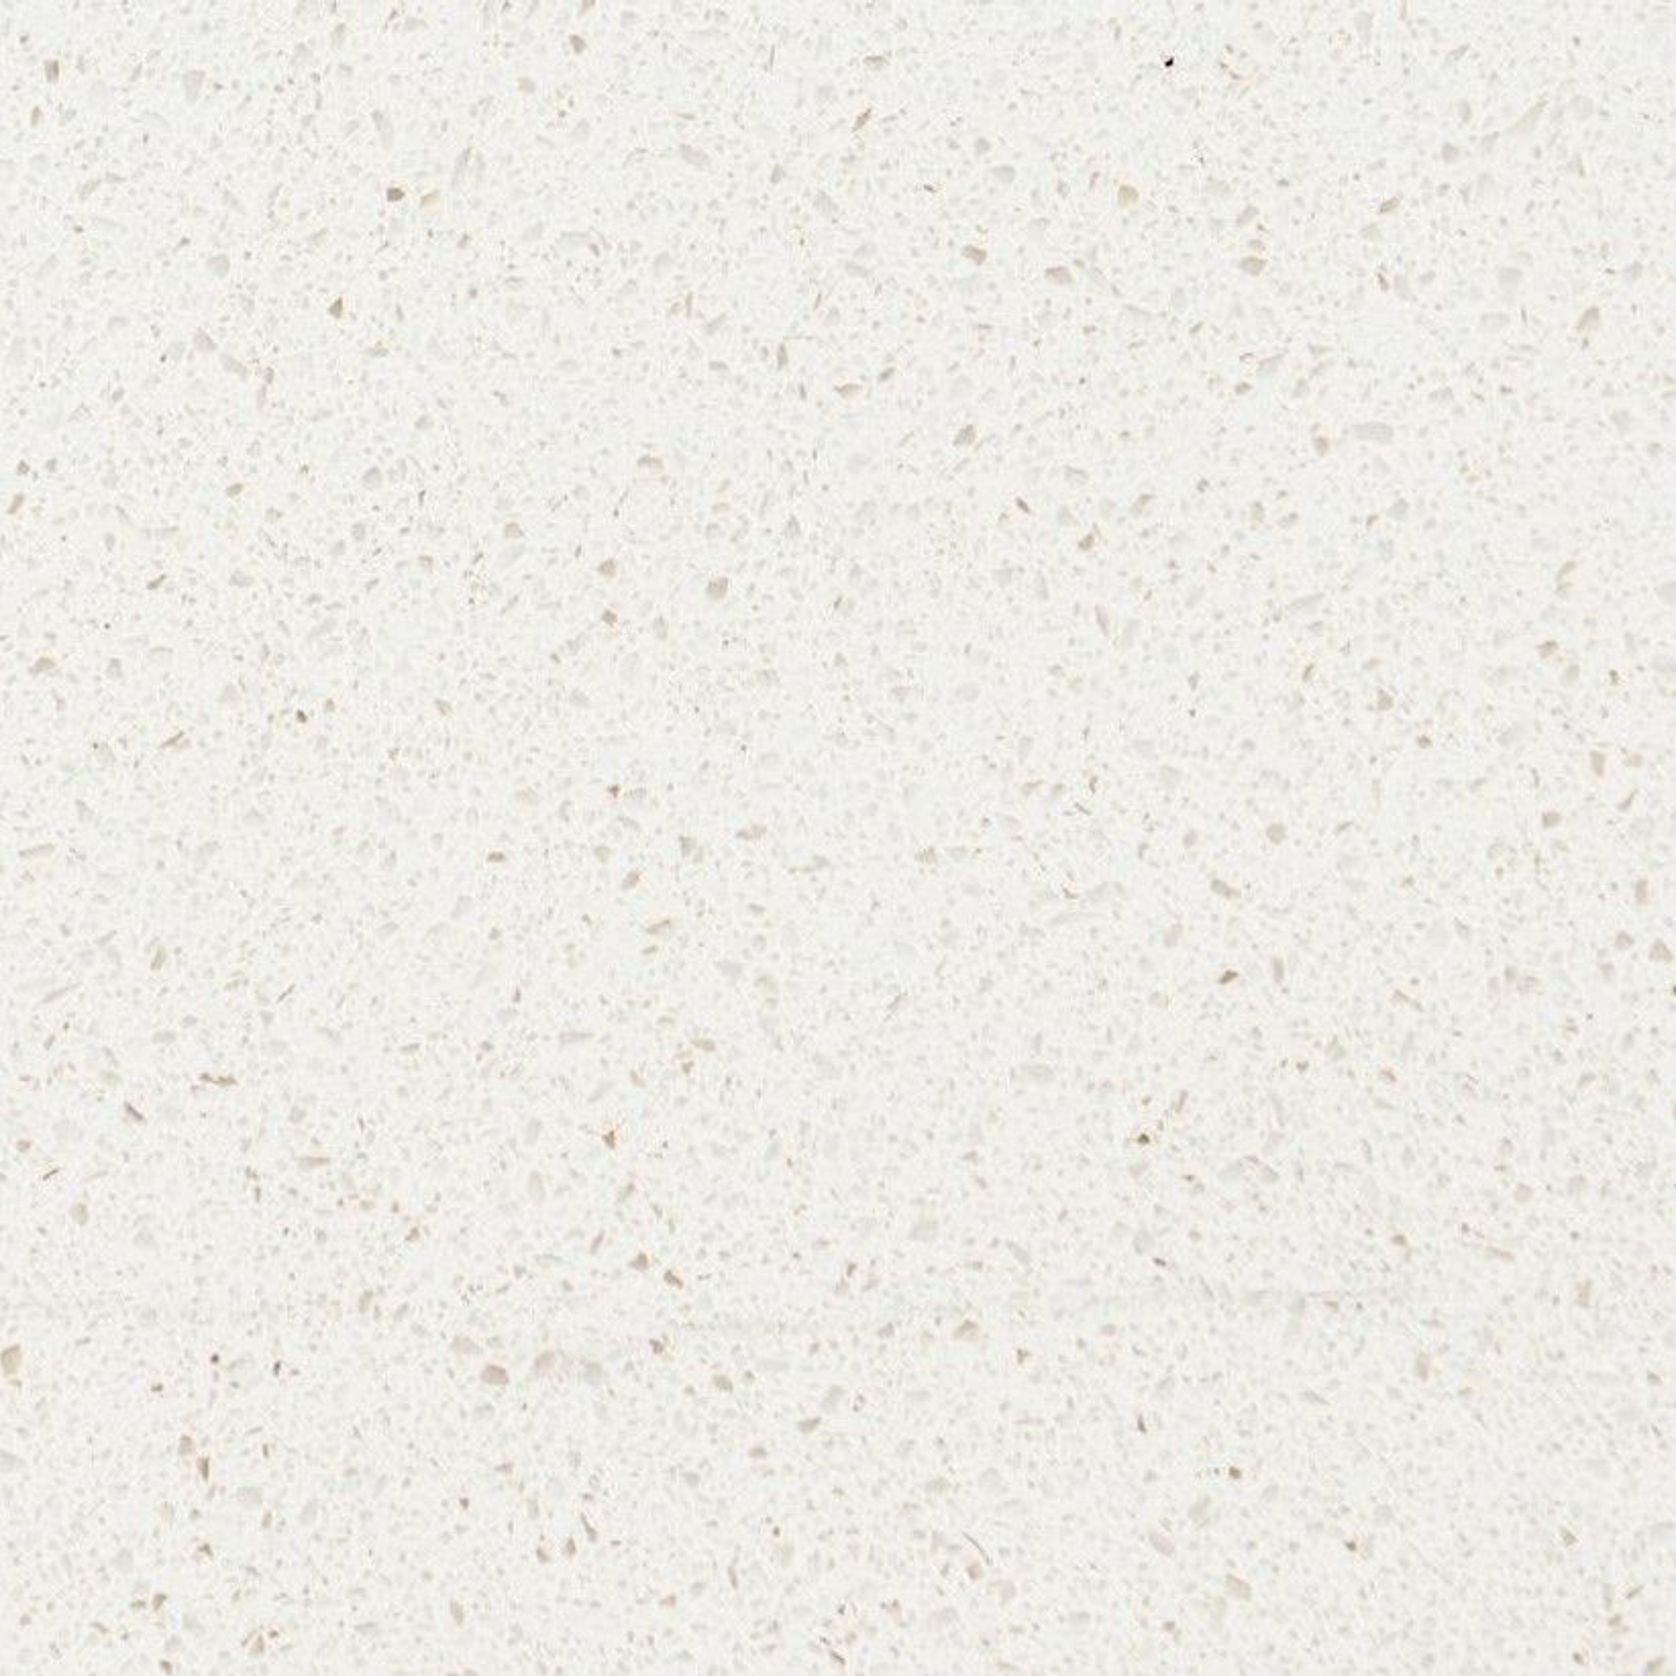 White Sand - UniQuartz Polished Engineered Stone gallery detail image